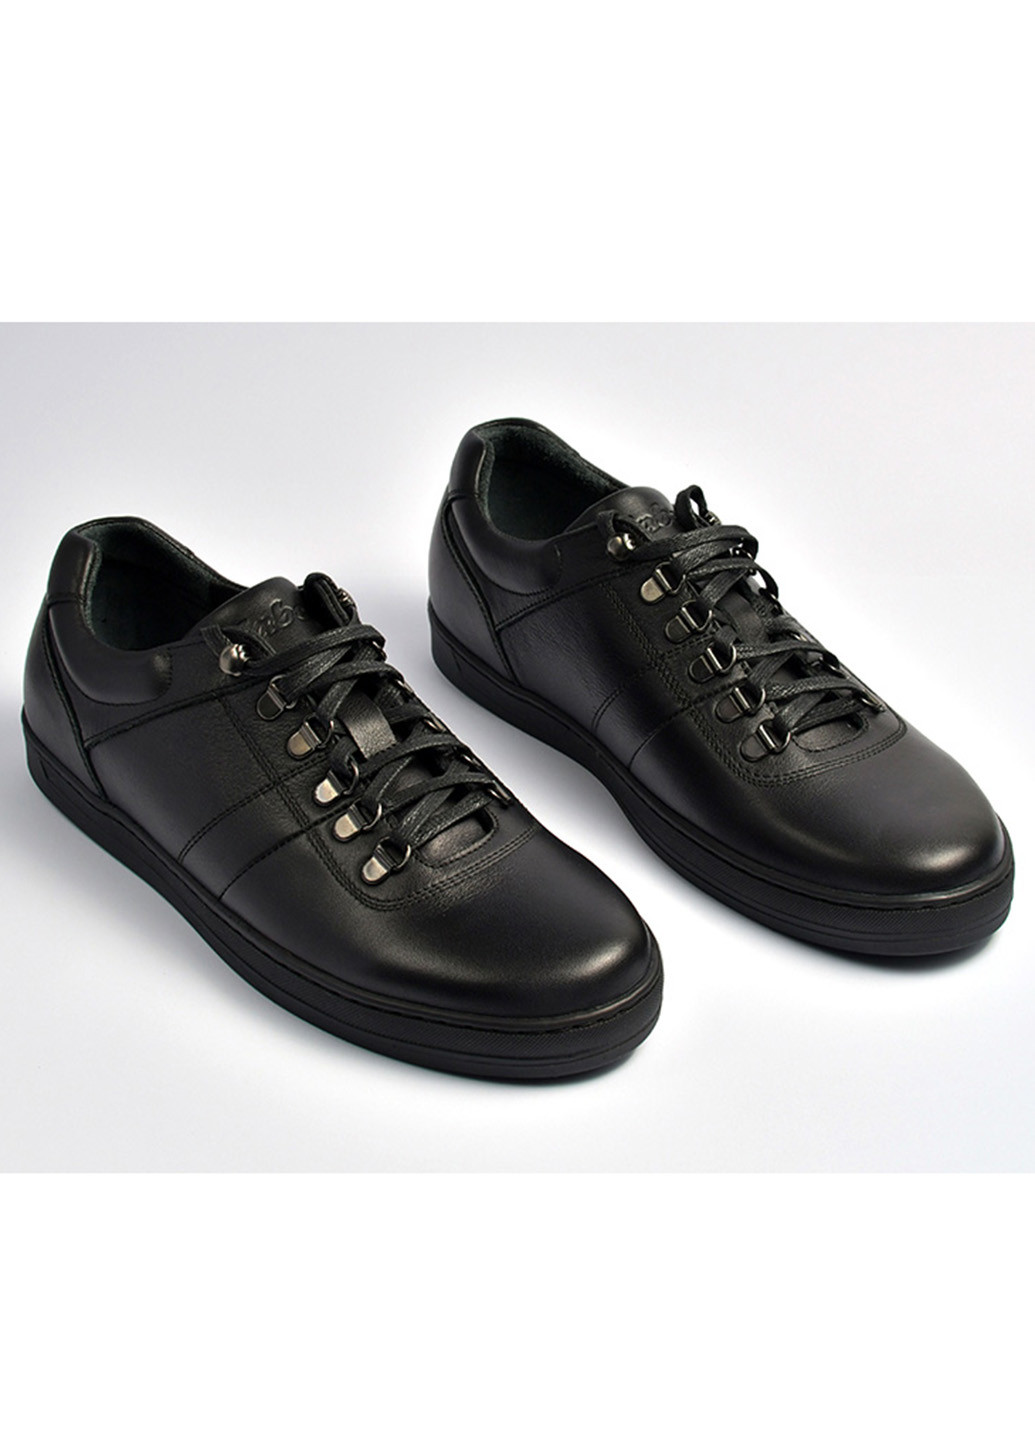 Черные туфли мужские Faber на шнурках